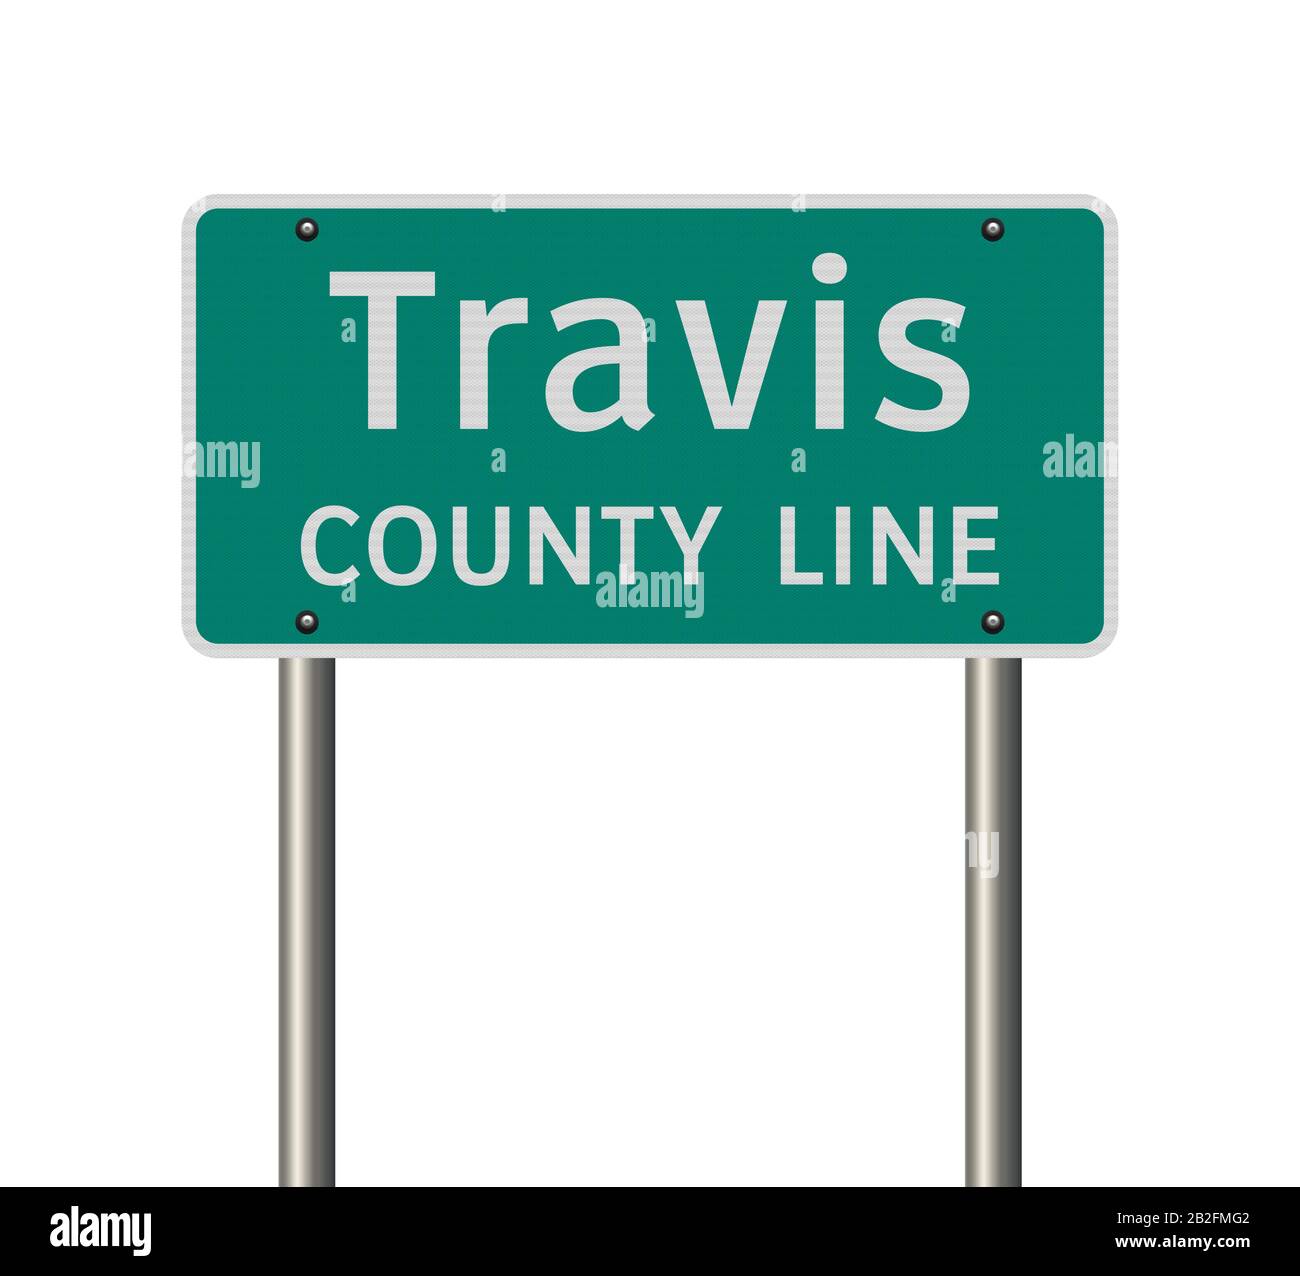 Illustration vectorielle du panneau vert de la ligne de comté de Travis sur les poteaux métalliques Illustration de Vecteur